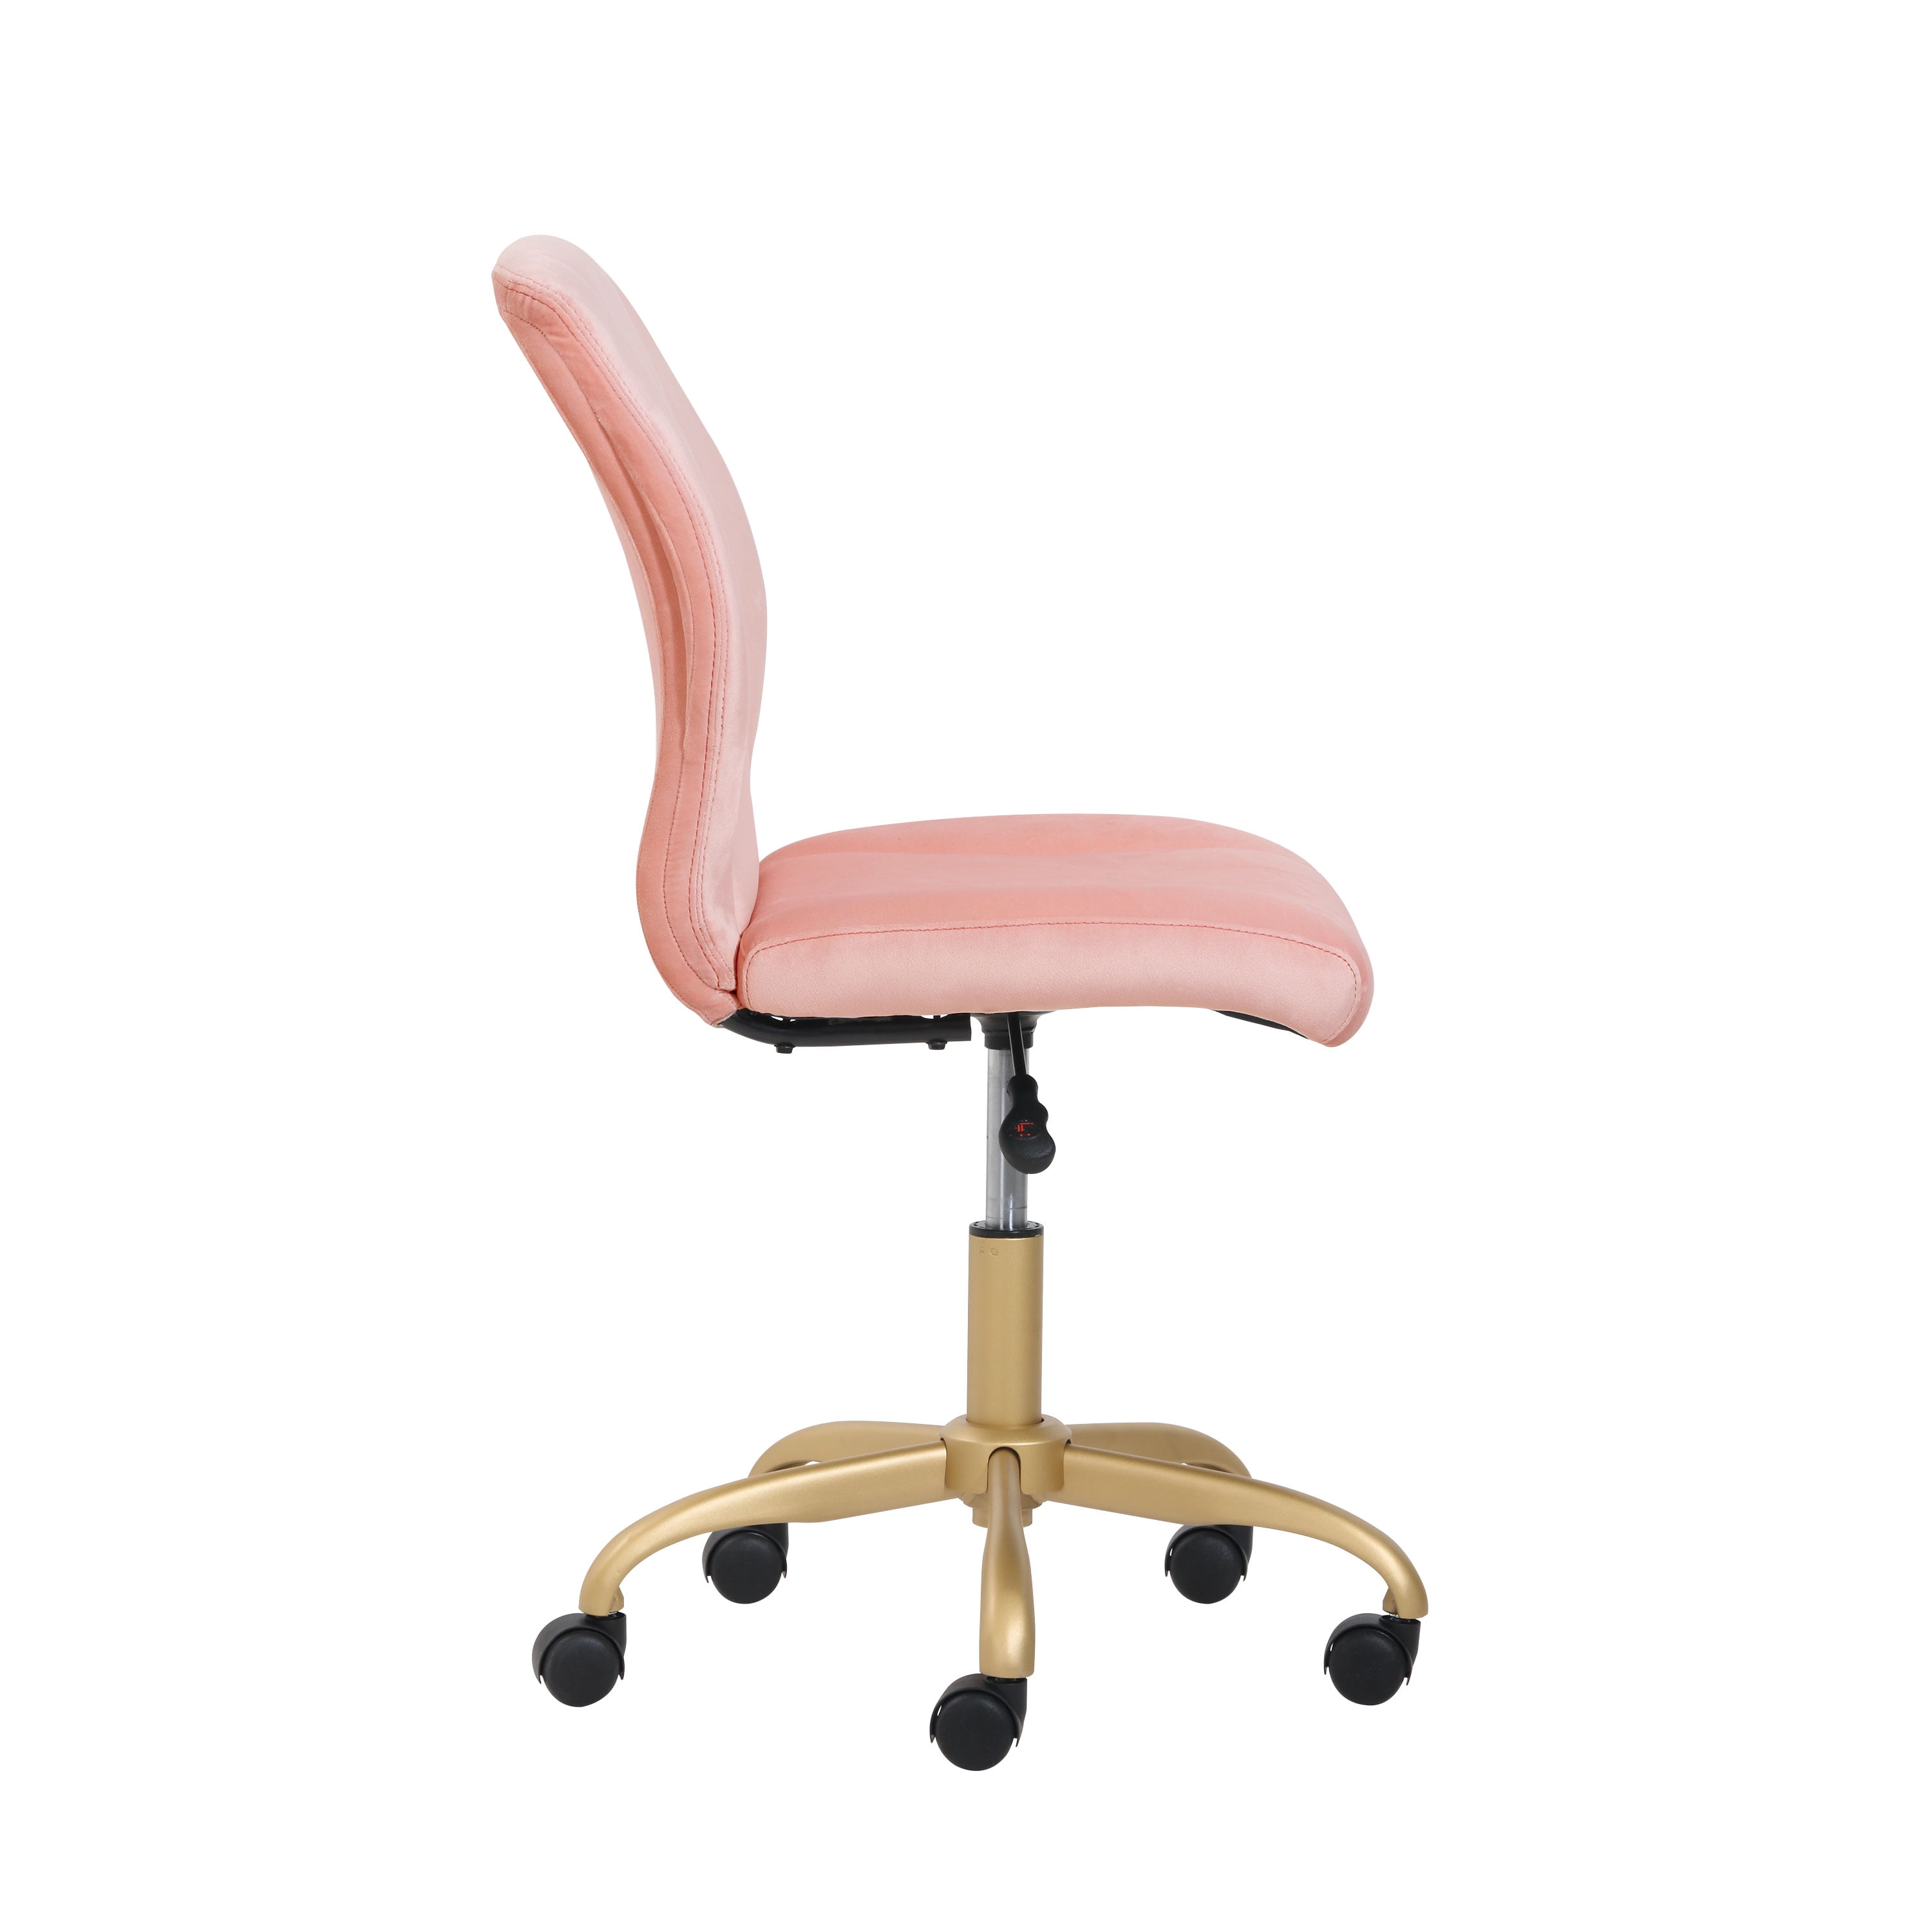 Mainstays Plush Velvet Office Chair, Pearl Blush - image 5 of 10